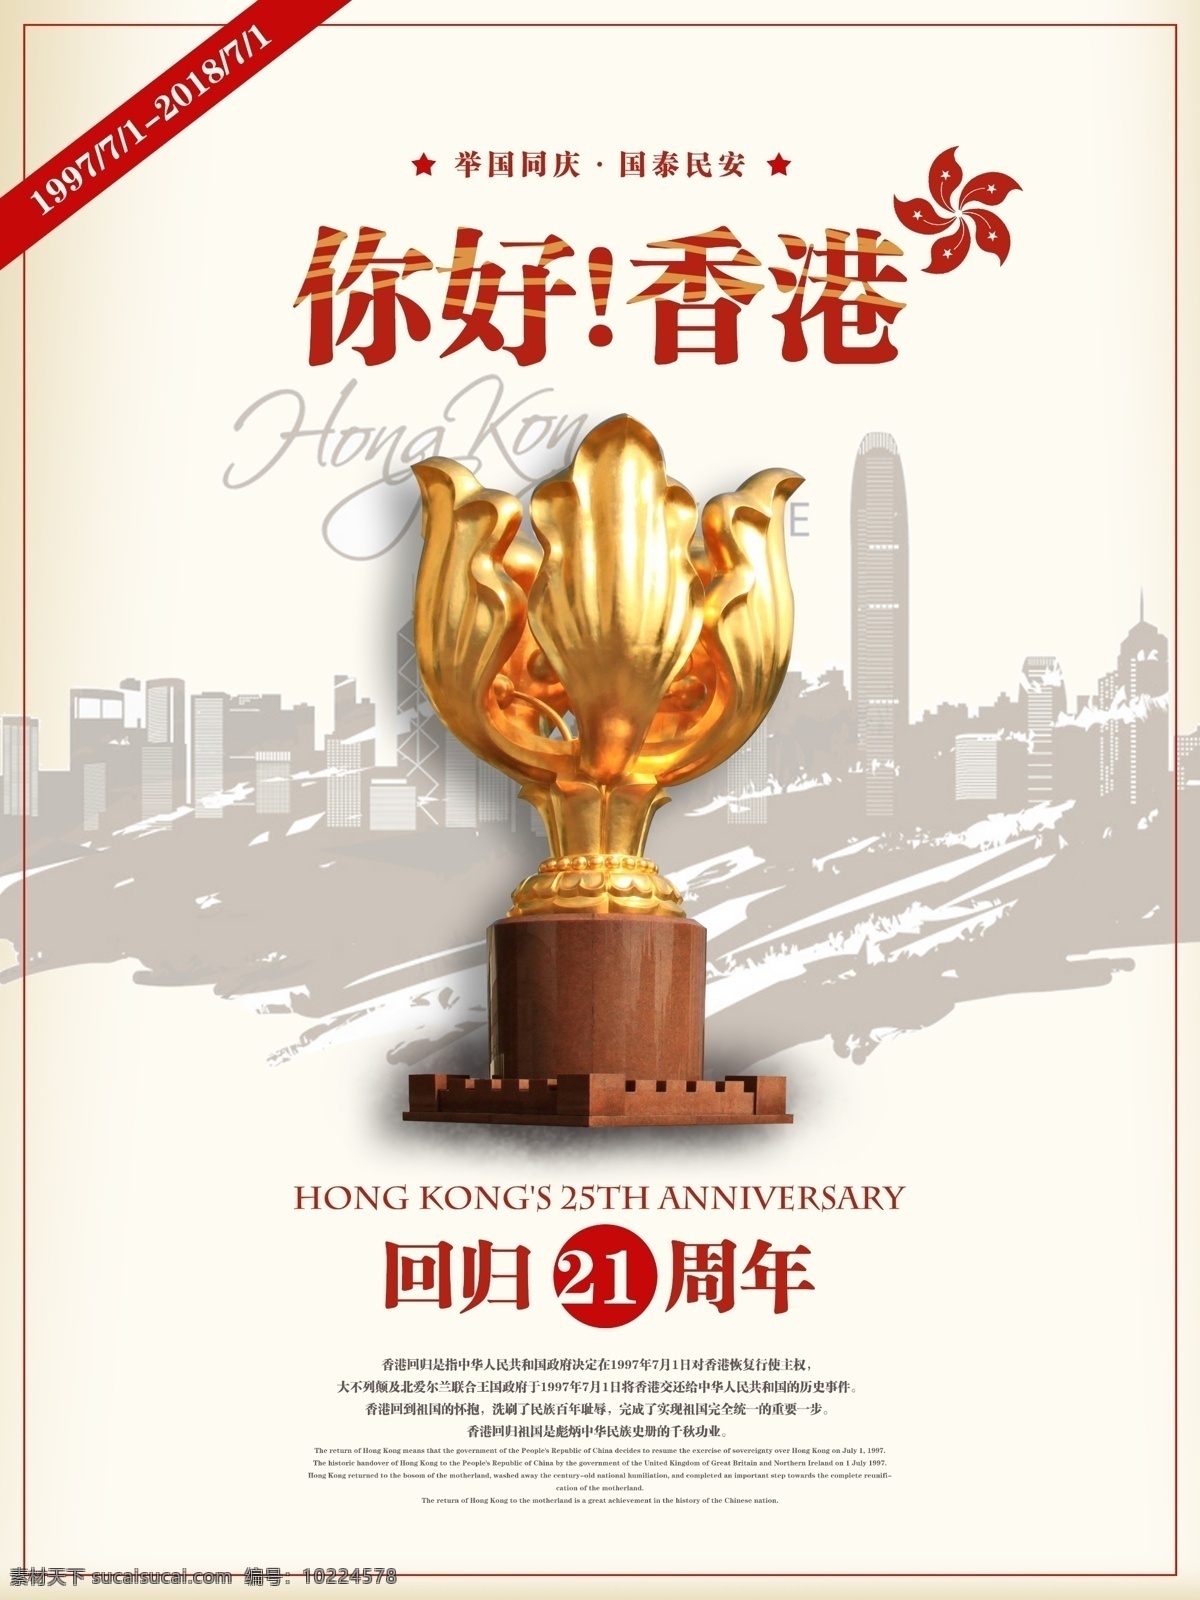 香港 回归 周年纪念 公益 海报 周年 公益海报 怀旧 复古 中国梦 纪念 中国 紫荆花